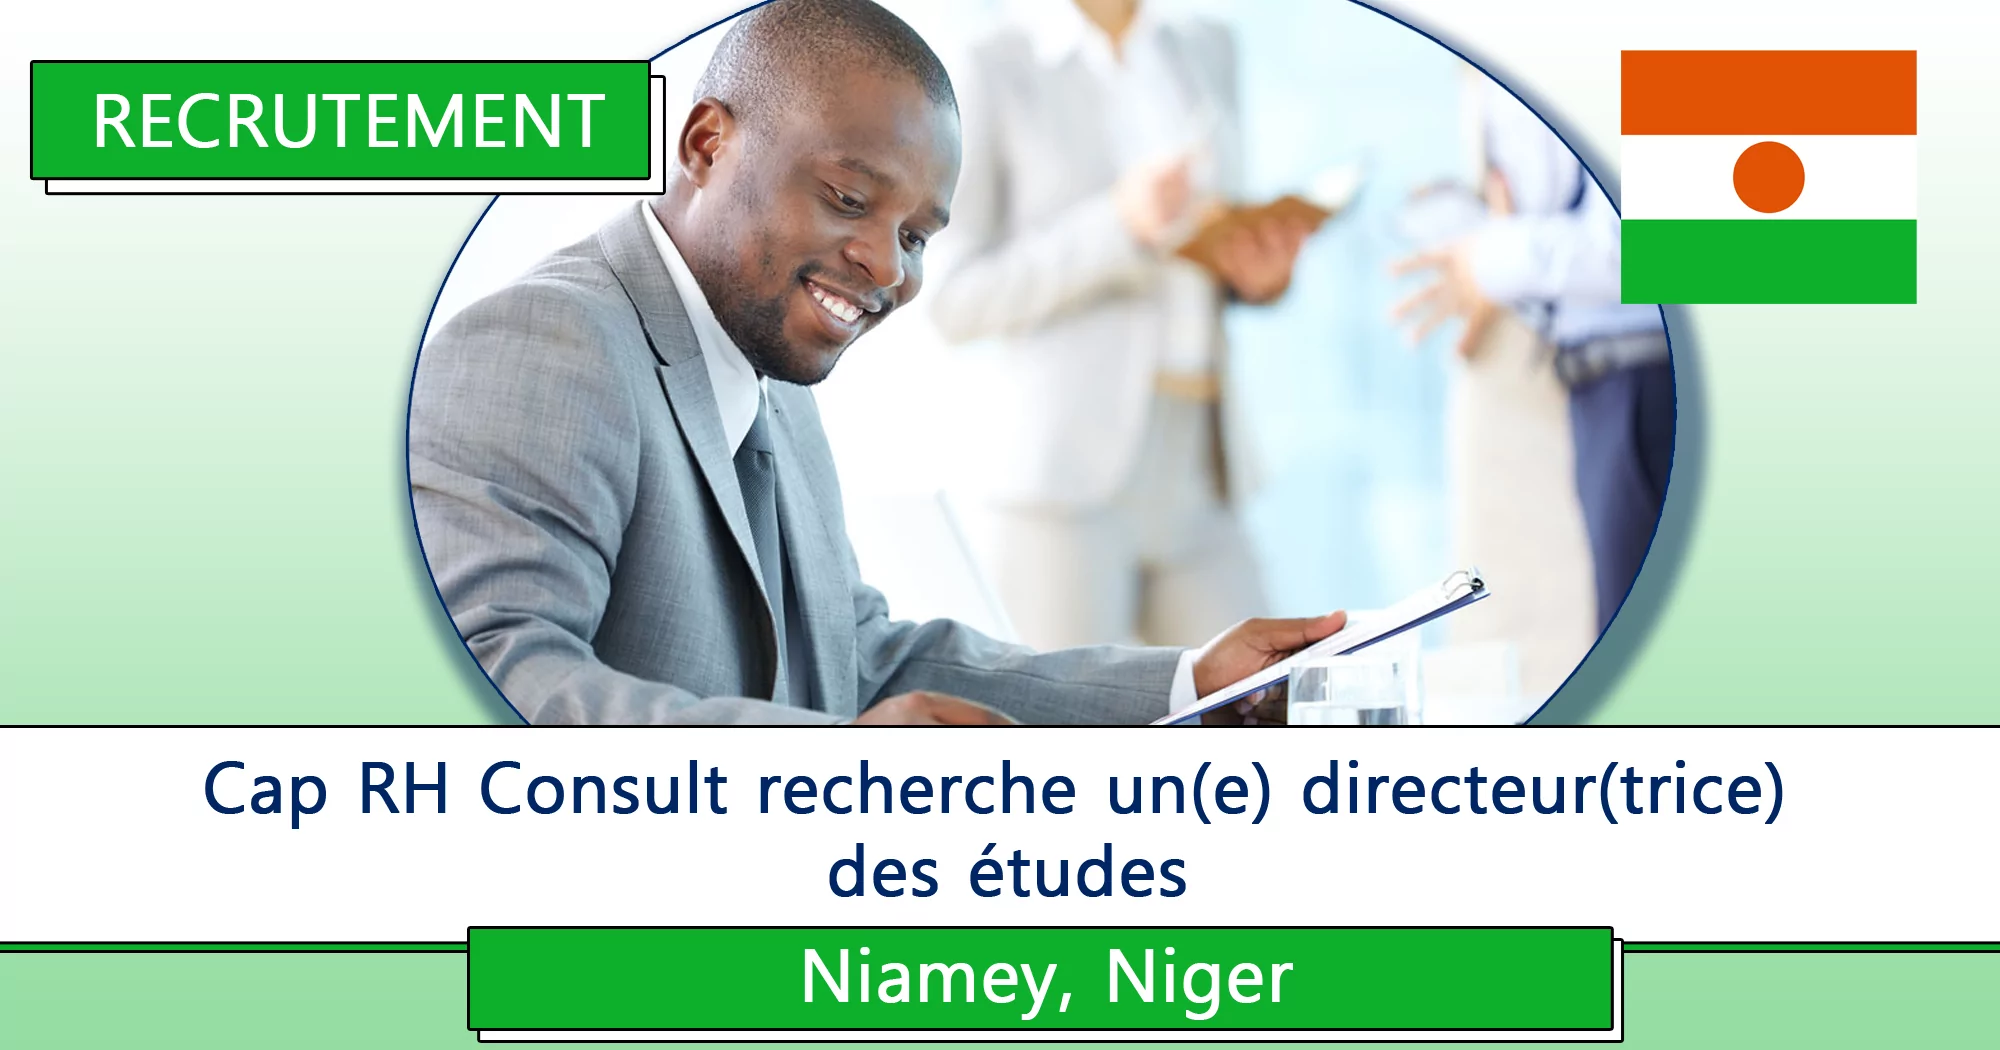 Cap RH Consult recherche un(e) directeur(trice) des études, Niamey, Niger